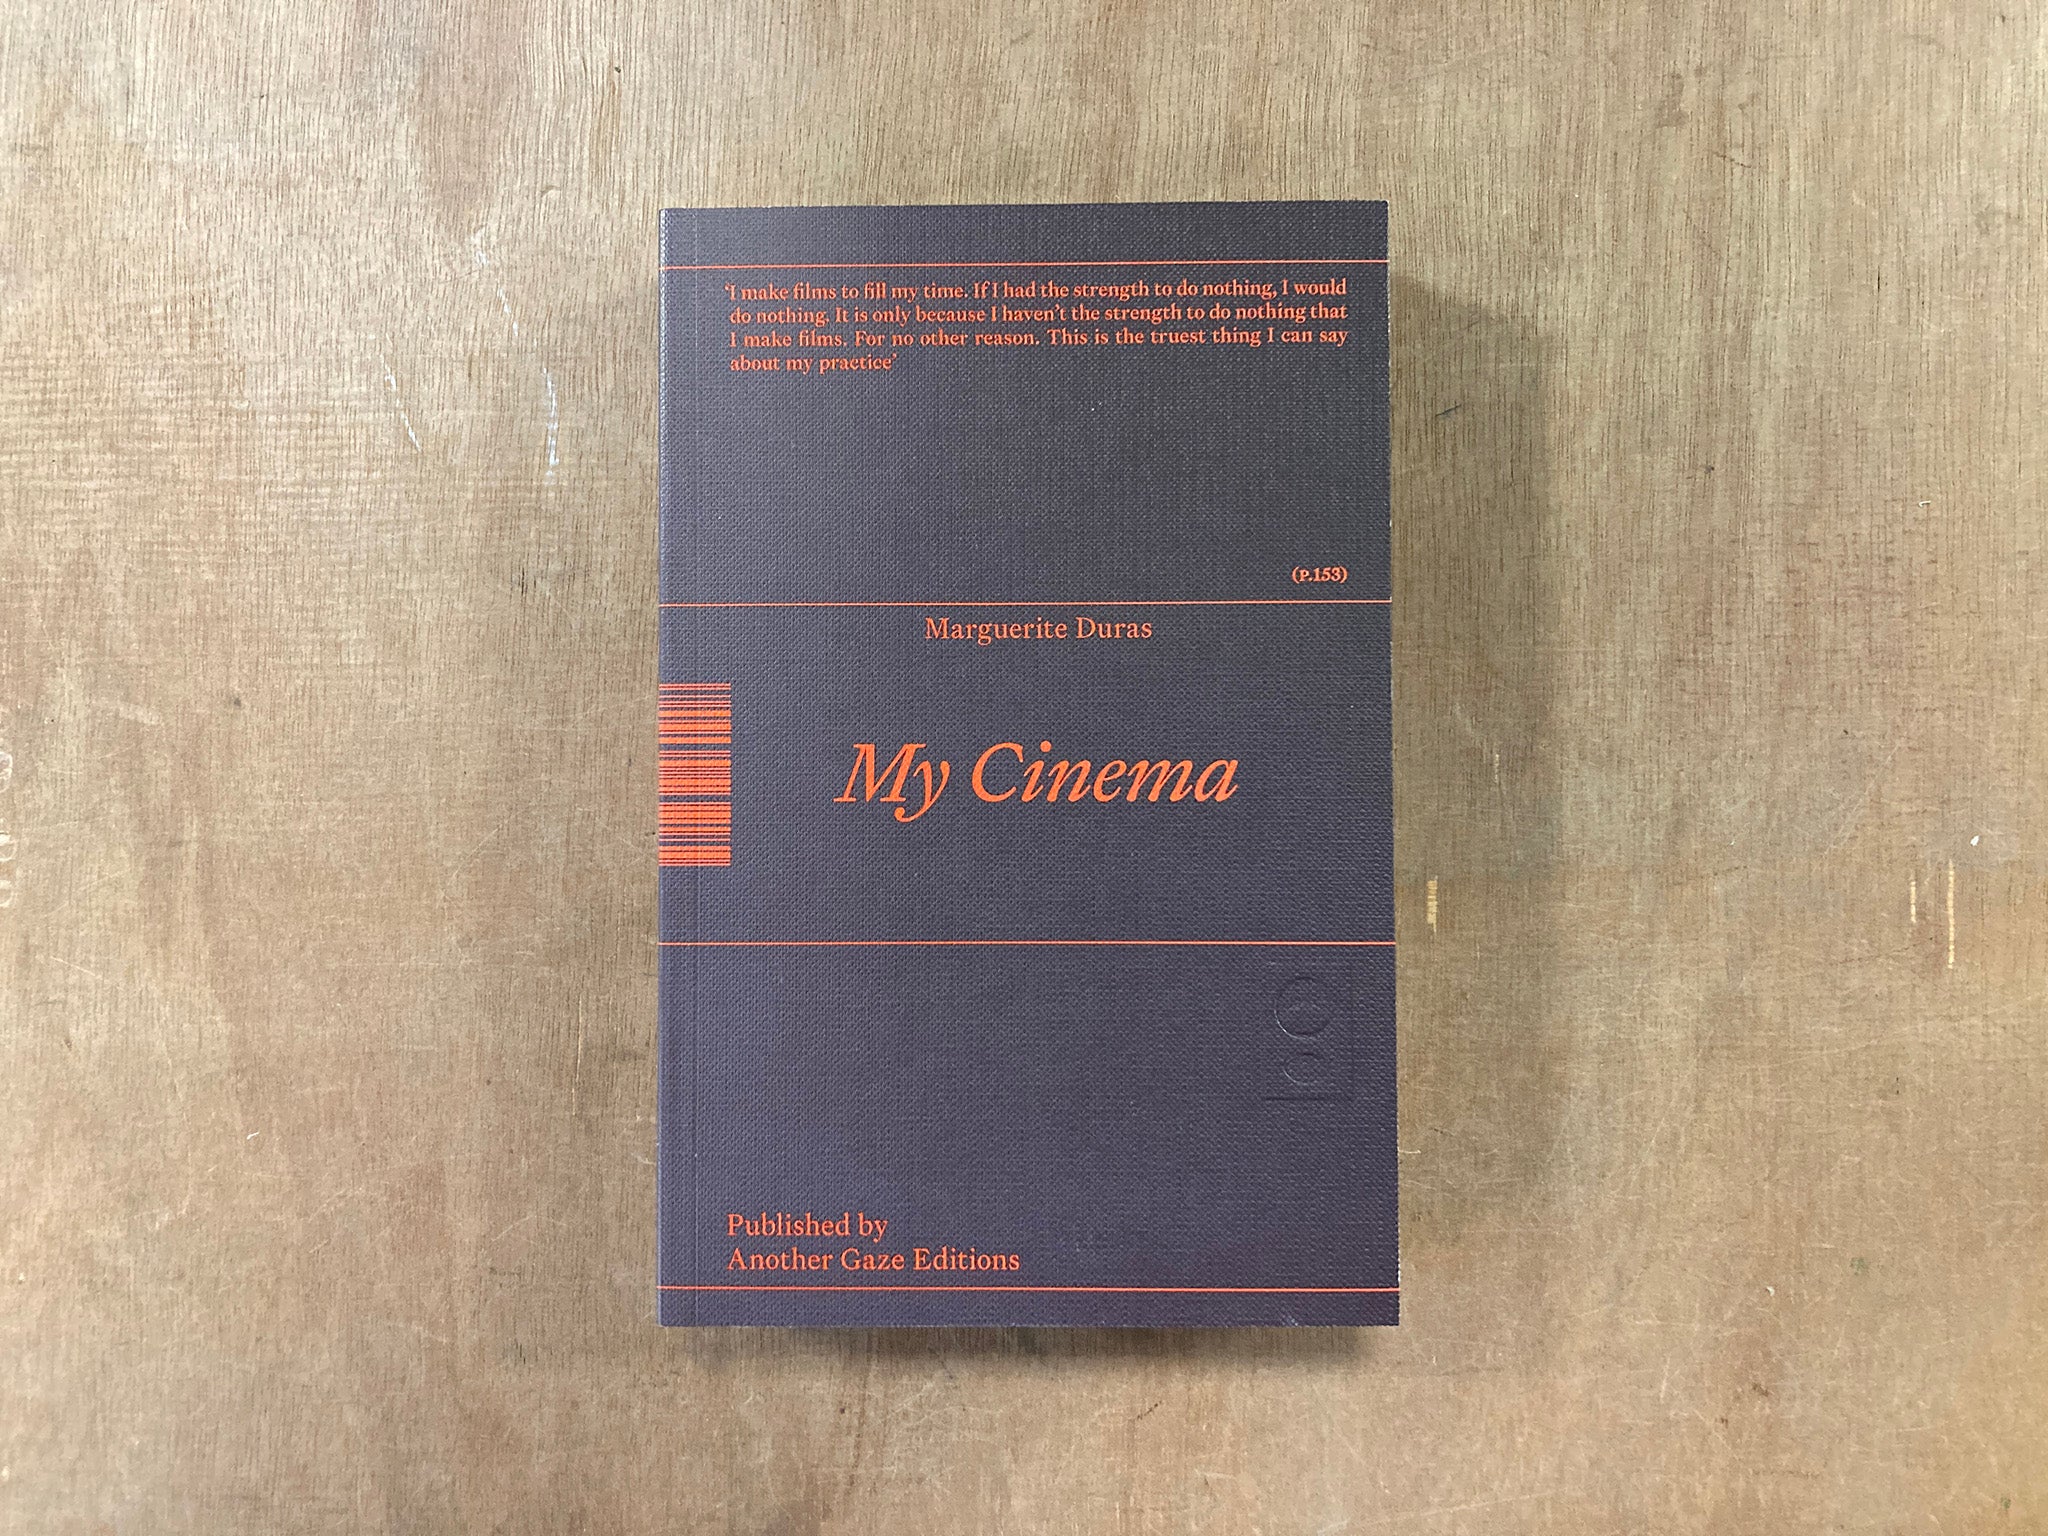 MY CINEMA by Marguerite Duras